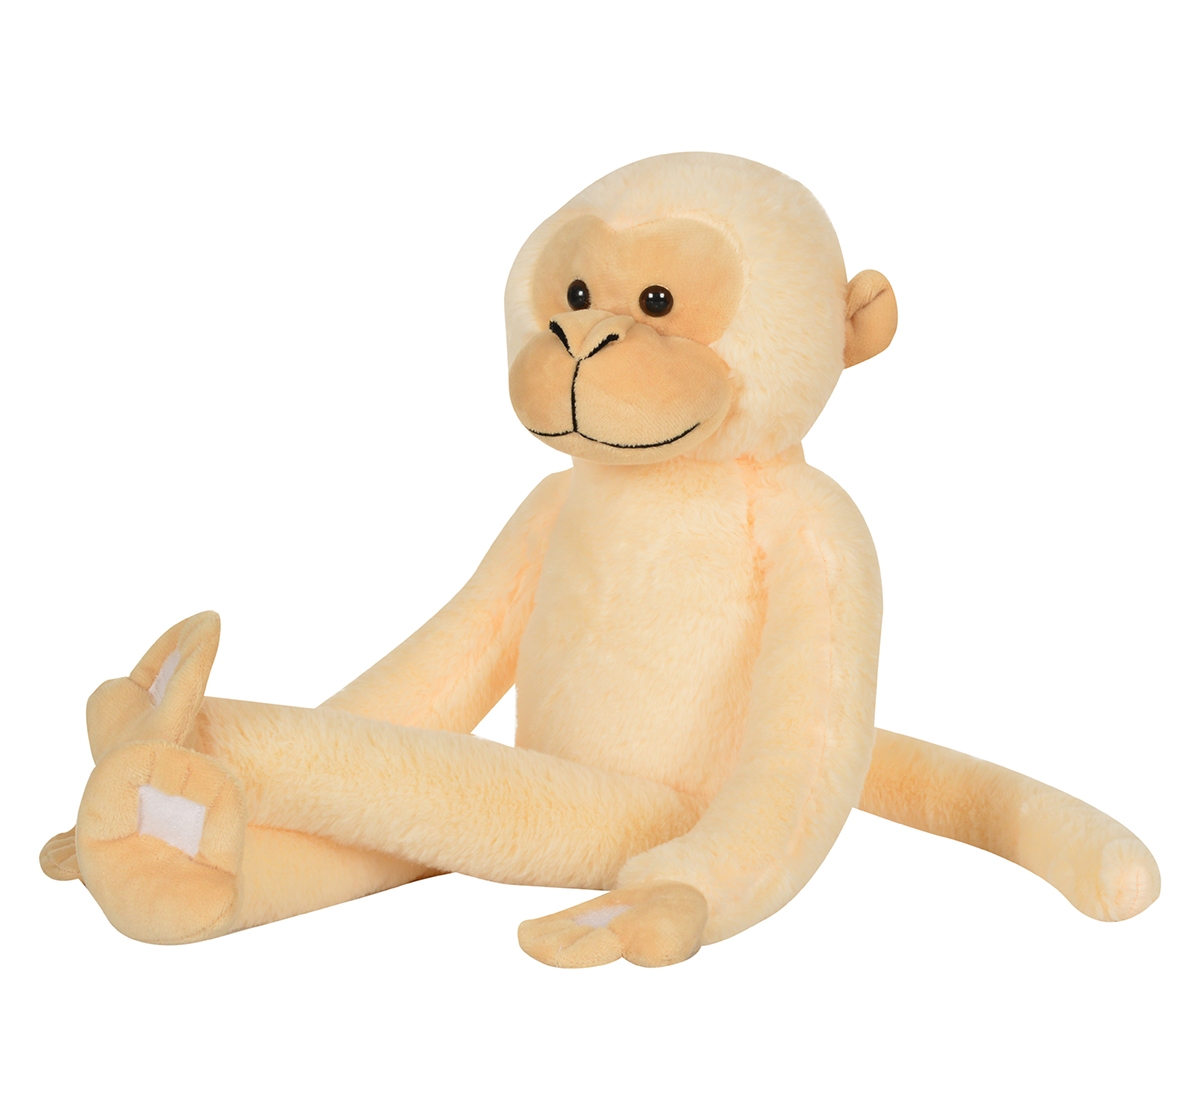 Mirada | Mirada 52cm hanging monkey soft toy Multicolor 3Y+